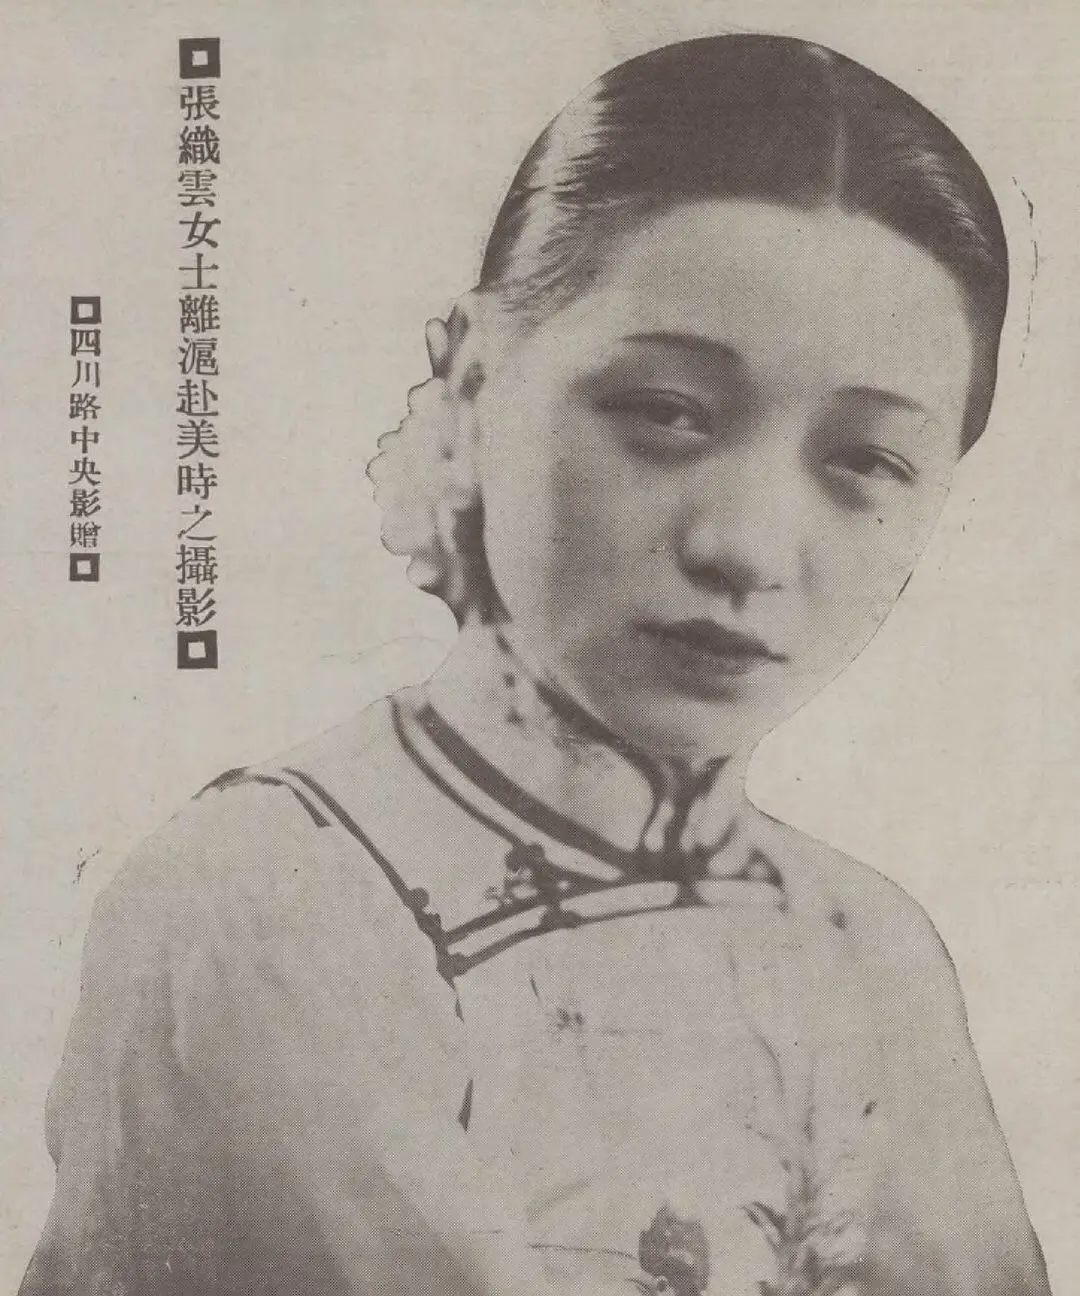 1927年可是张织云刚当上电影皇后的 第二年呐……嗯,大约是被爱情冲